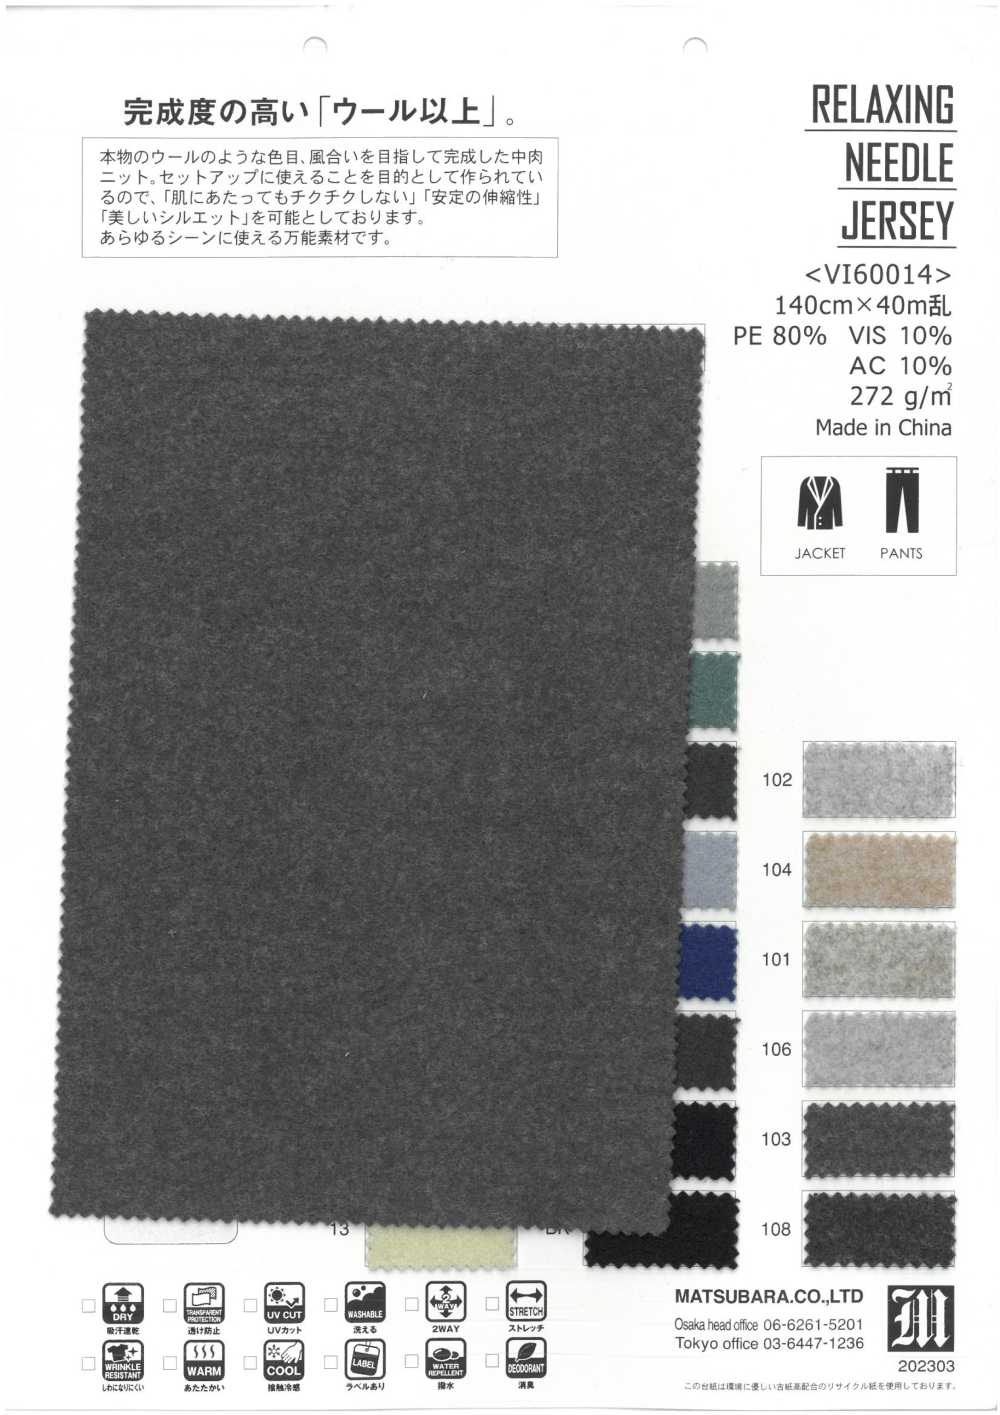 VI60014 JERSEY DE AGULHA RELAXANTE[Têxtil / Tecido] Matsubara